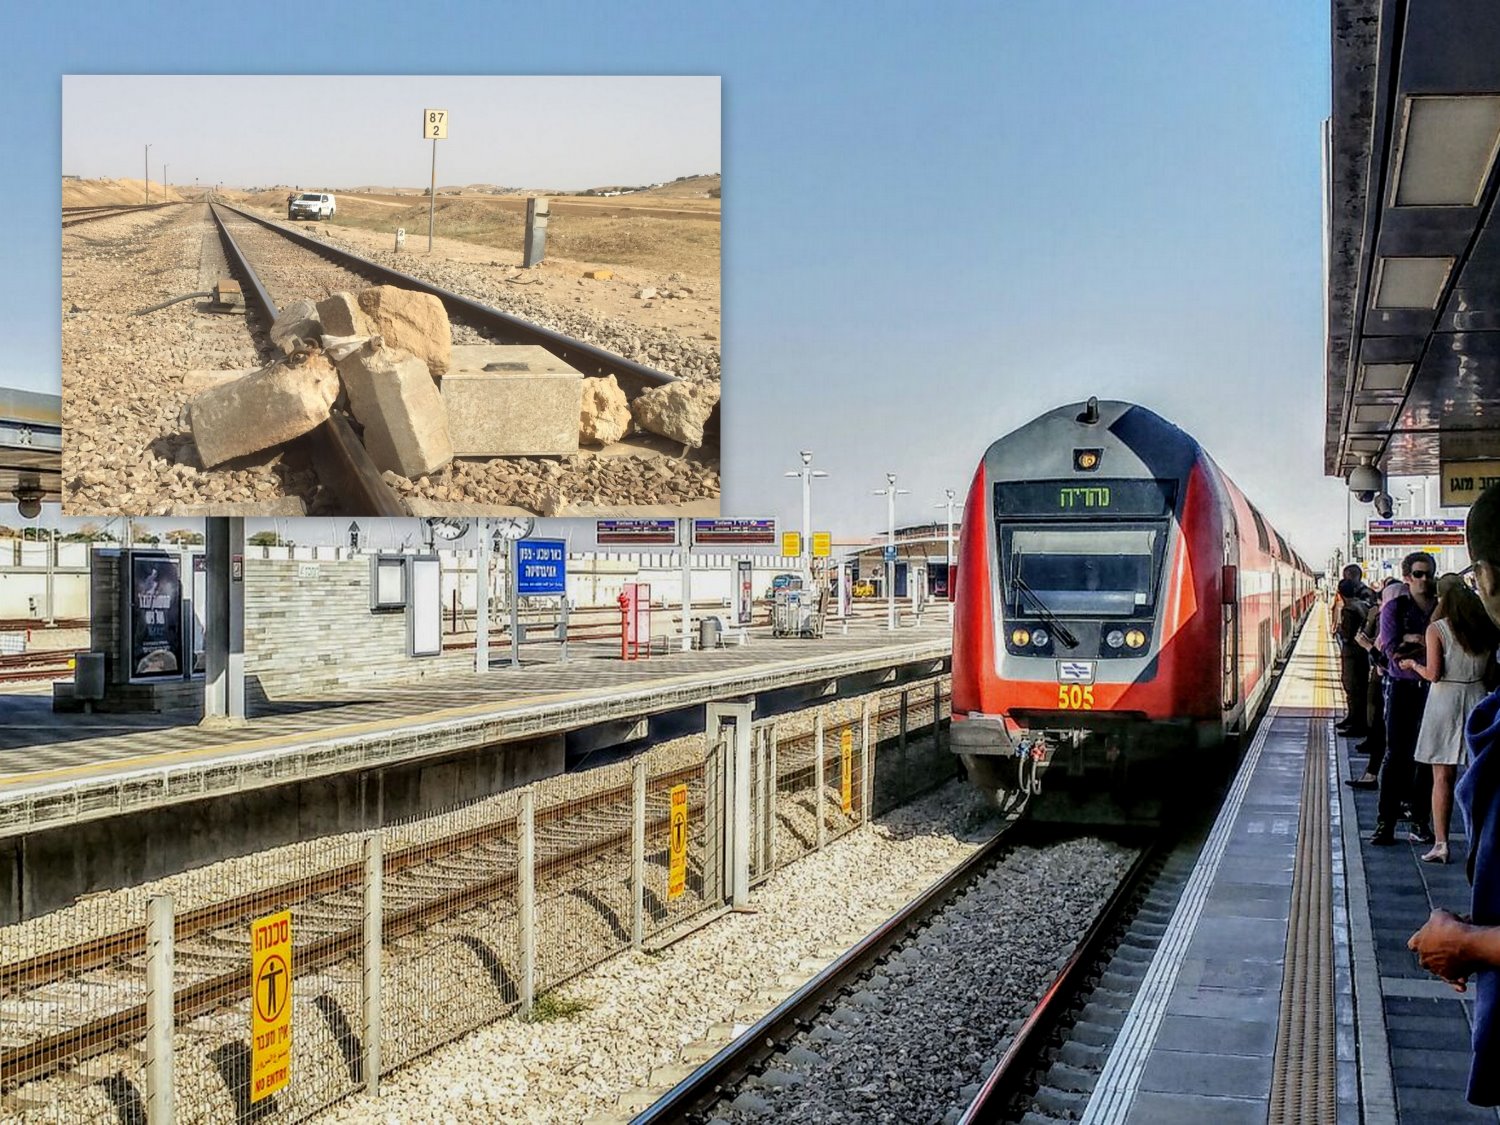 הסלעים שהונחו על מסילת הרכבת היו עלולים לגרום לירידה מהפסים ולפגיעה בחפים מפשע. צילום: שרון טל ; דוברות המשטרה 